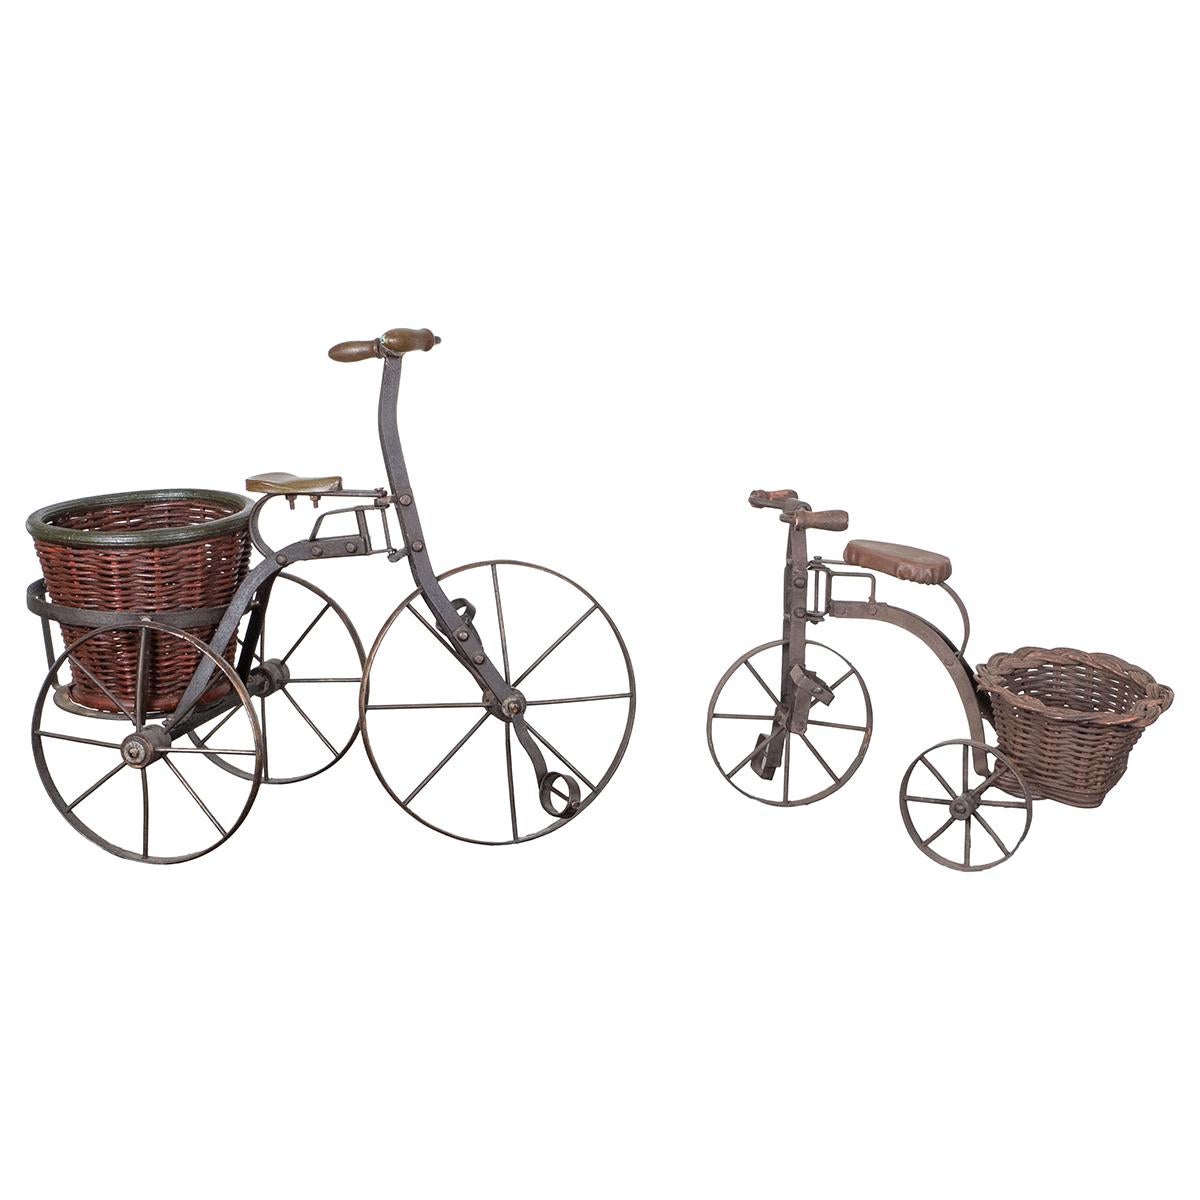 Zwei charmante, handgeschmiedete Vintage-Dreirad-Skulpturen aus Eisen mit Weidenkörben.

Großes Dreirad: 18,5 